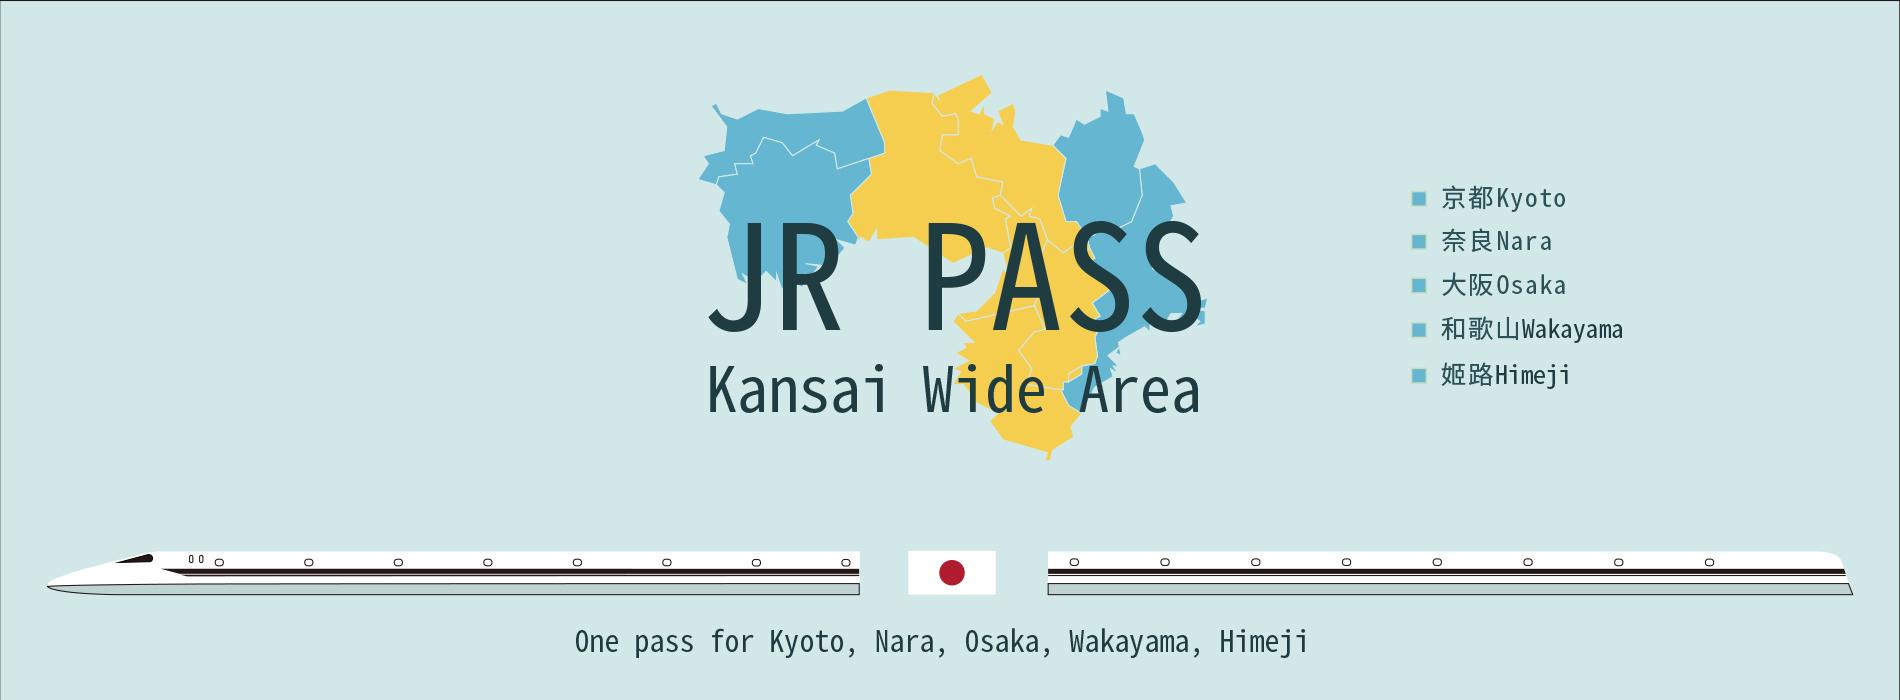 kansai jr pass